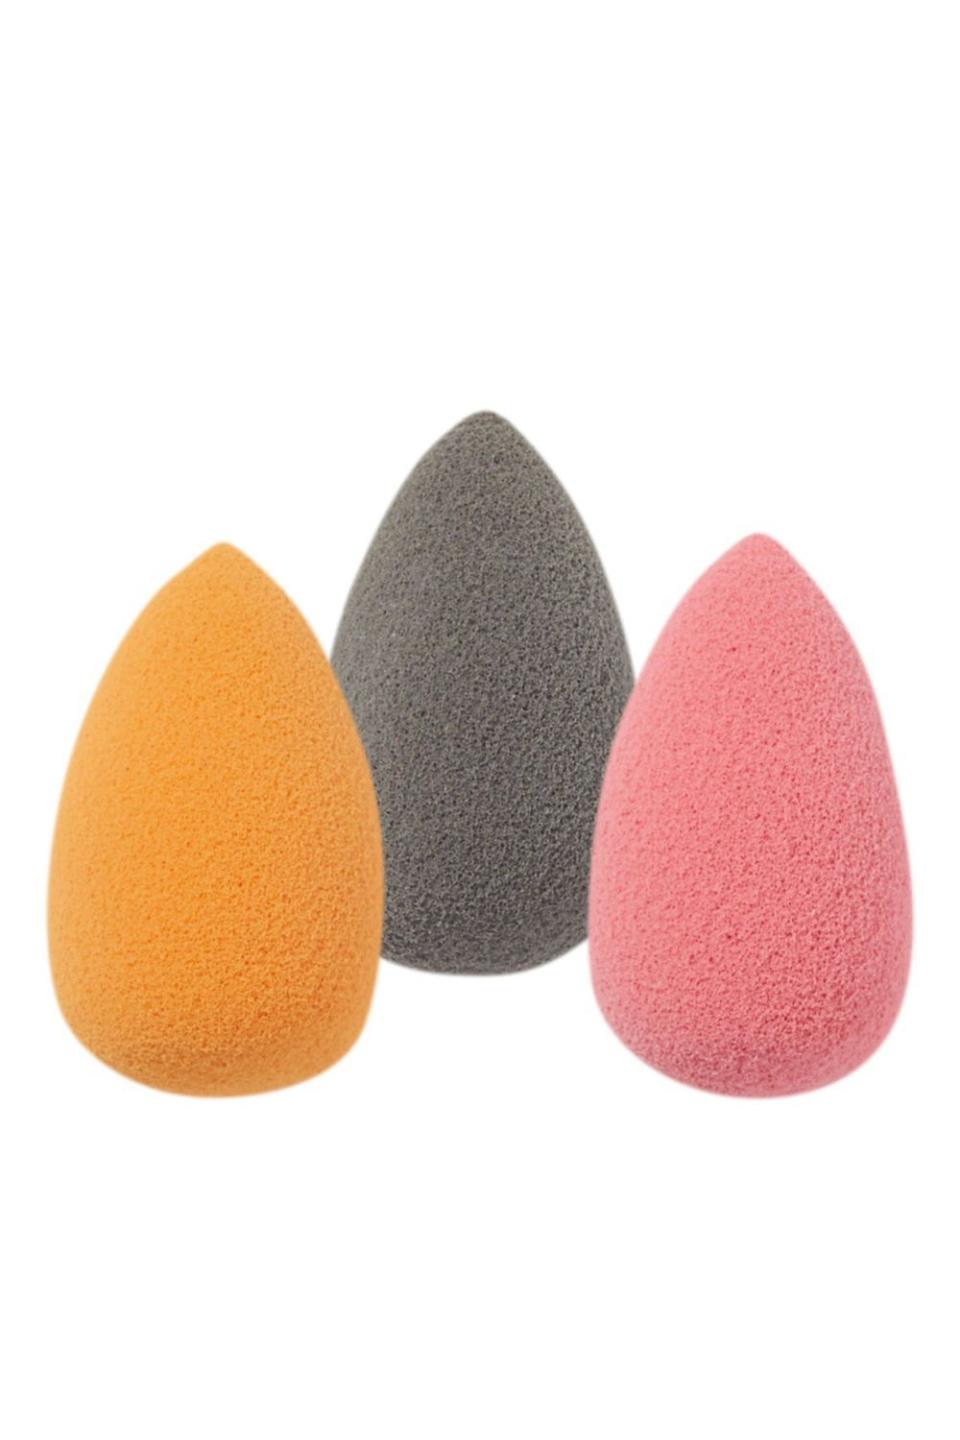 12) Ulta Beauty Mini Sponges Super Blender